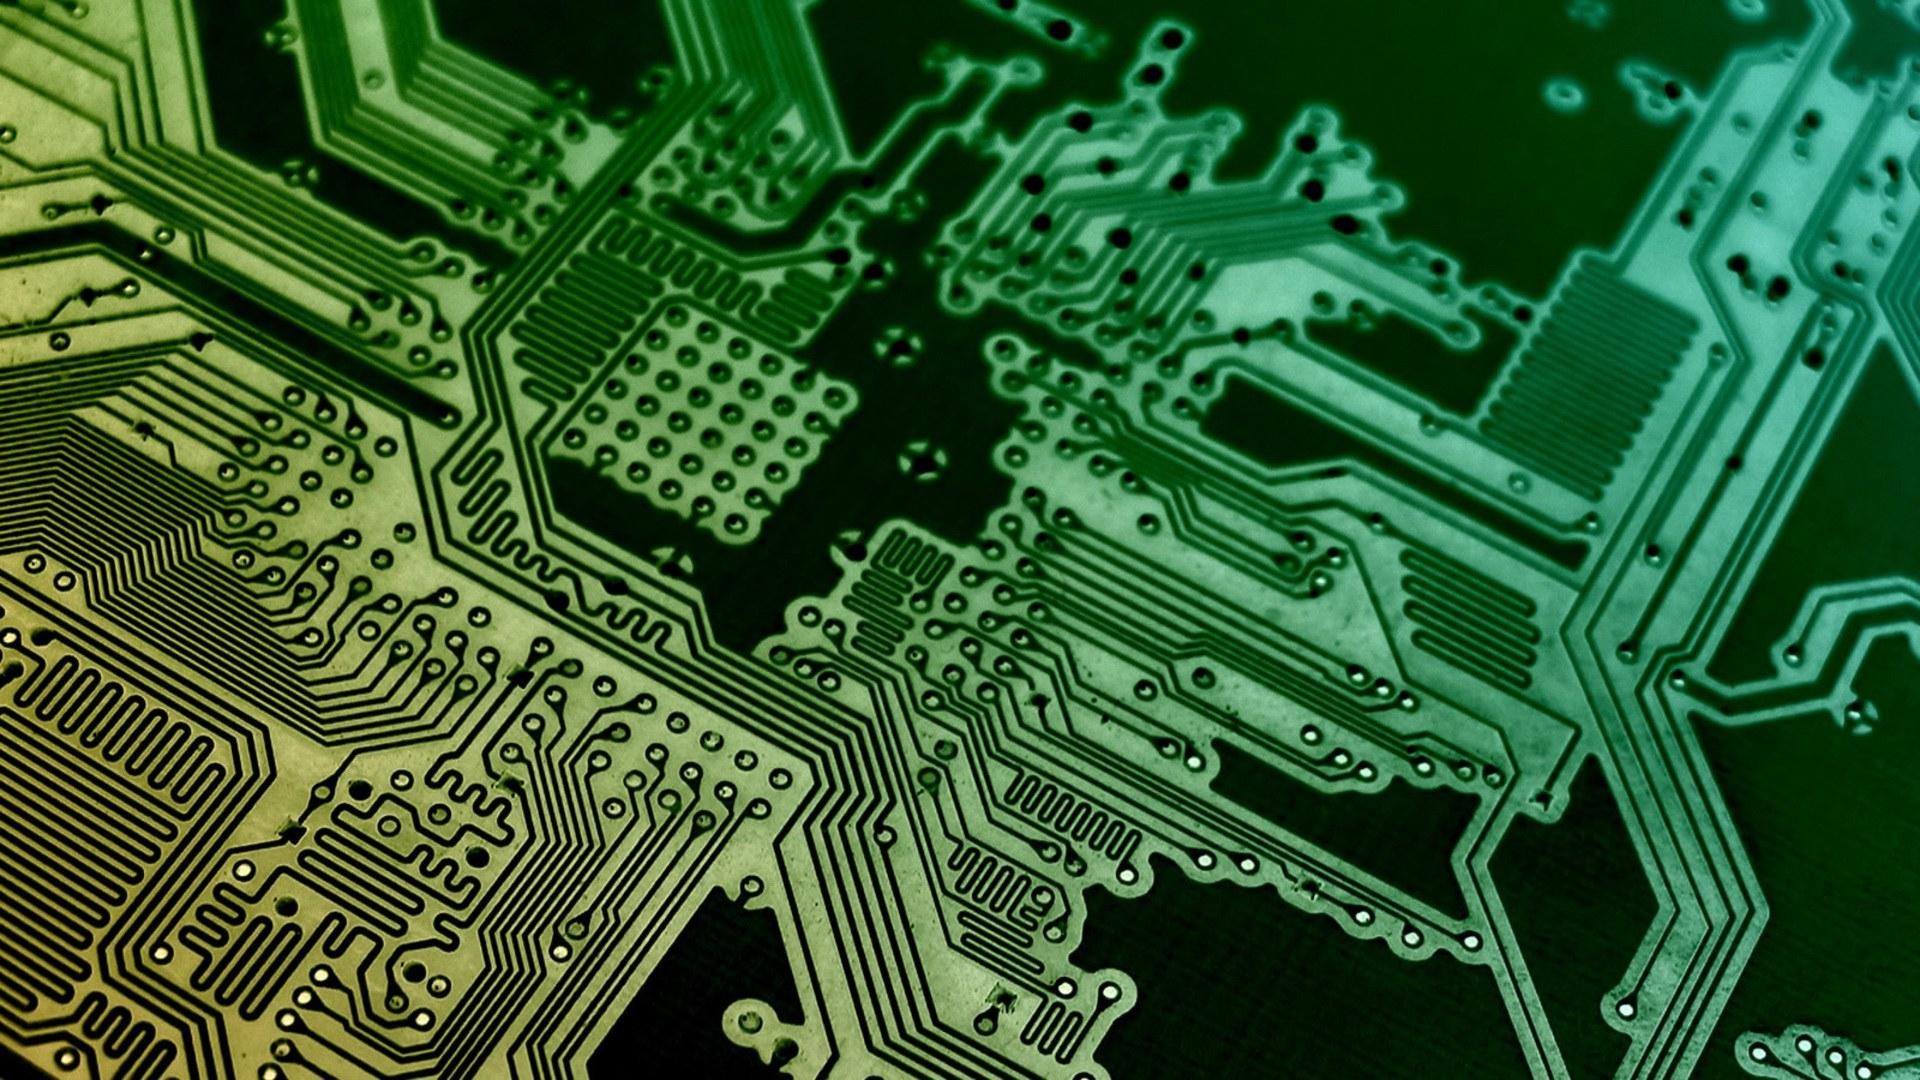 fond d'écran de circuit hd,vert,électronique,ingénierie électronique,modèle,composant élèctronique